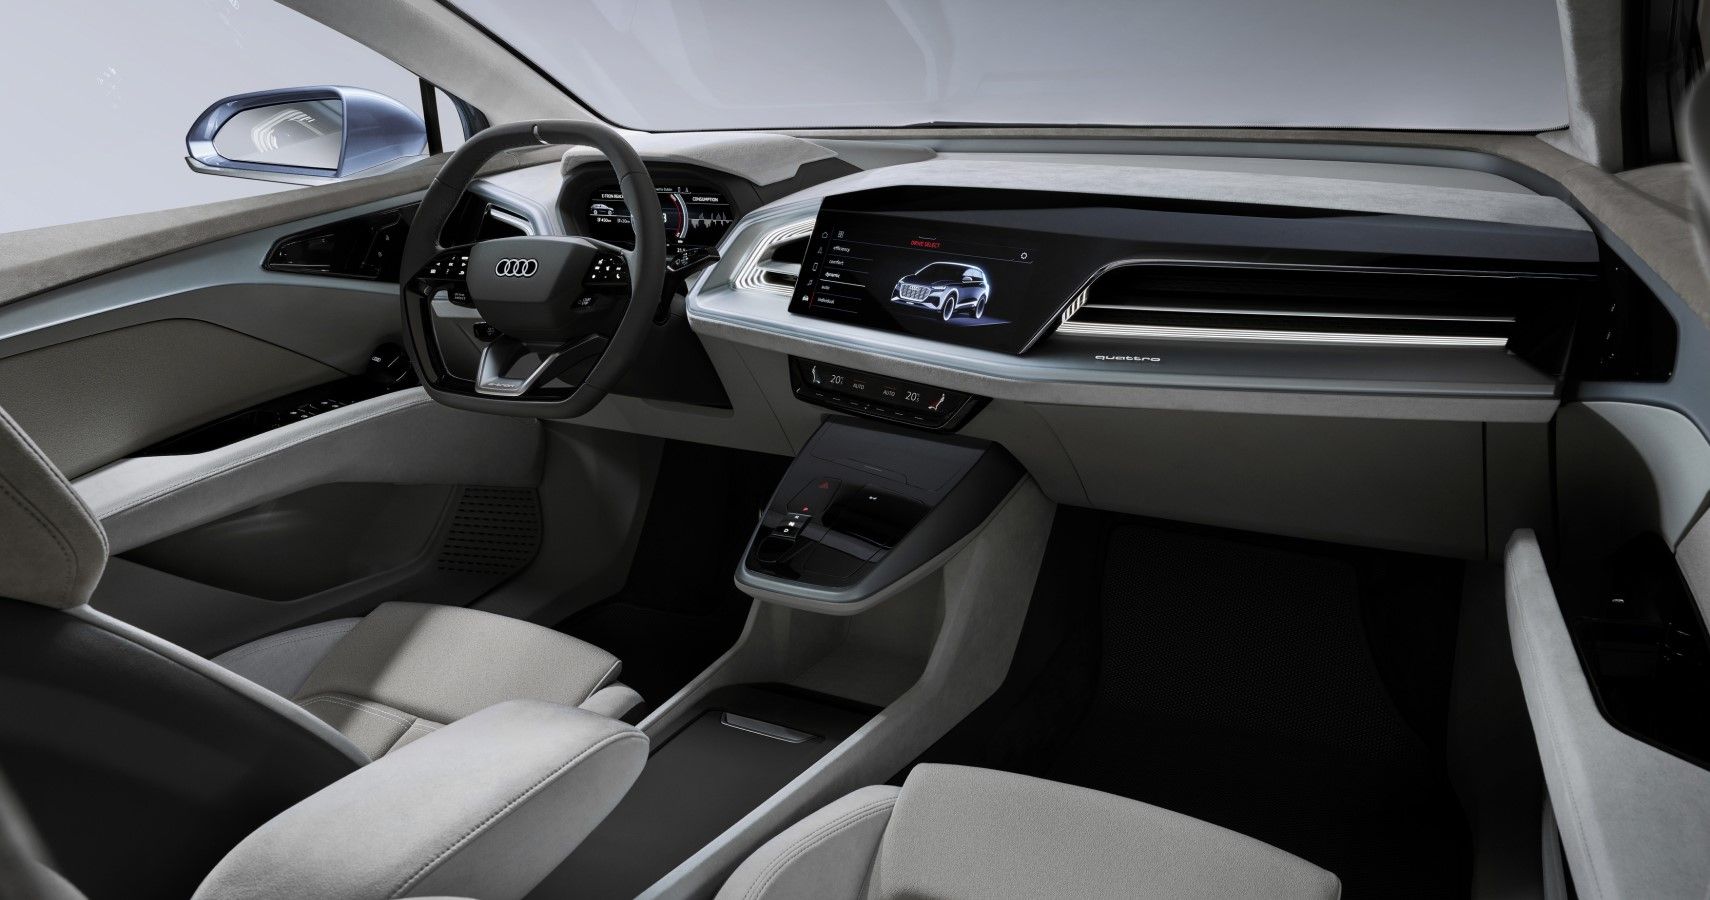 Audi Q4 e-tron interior view